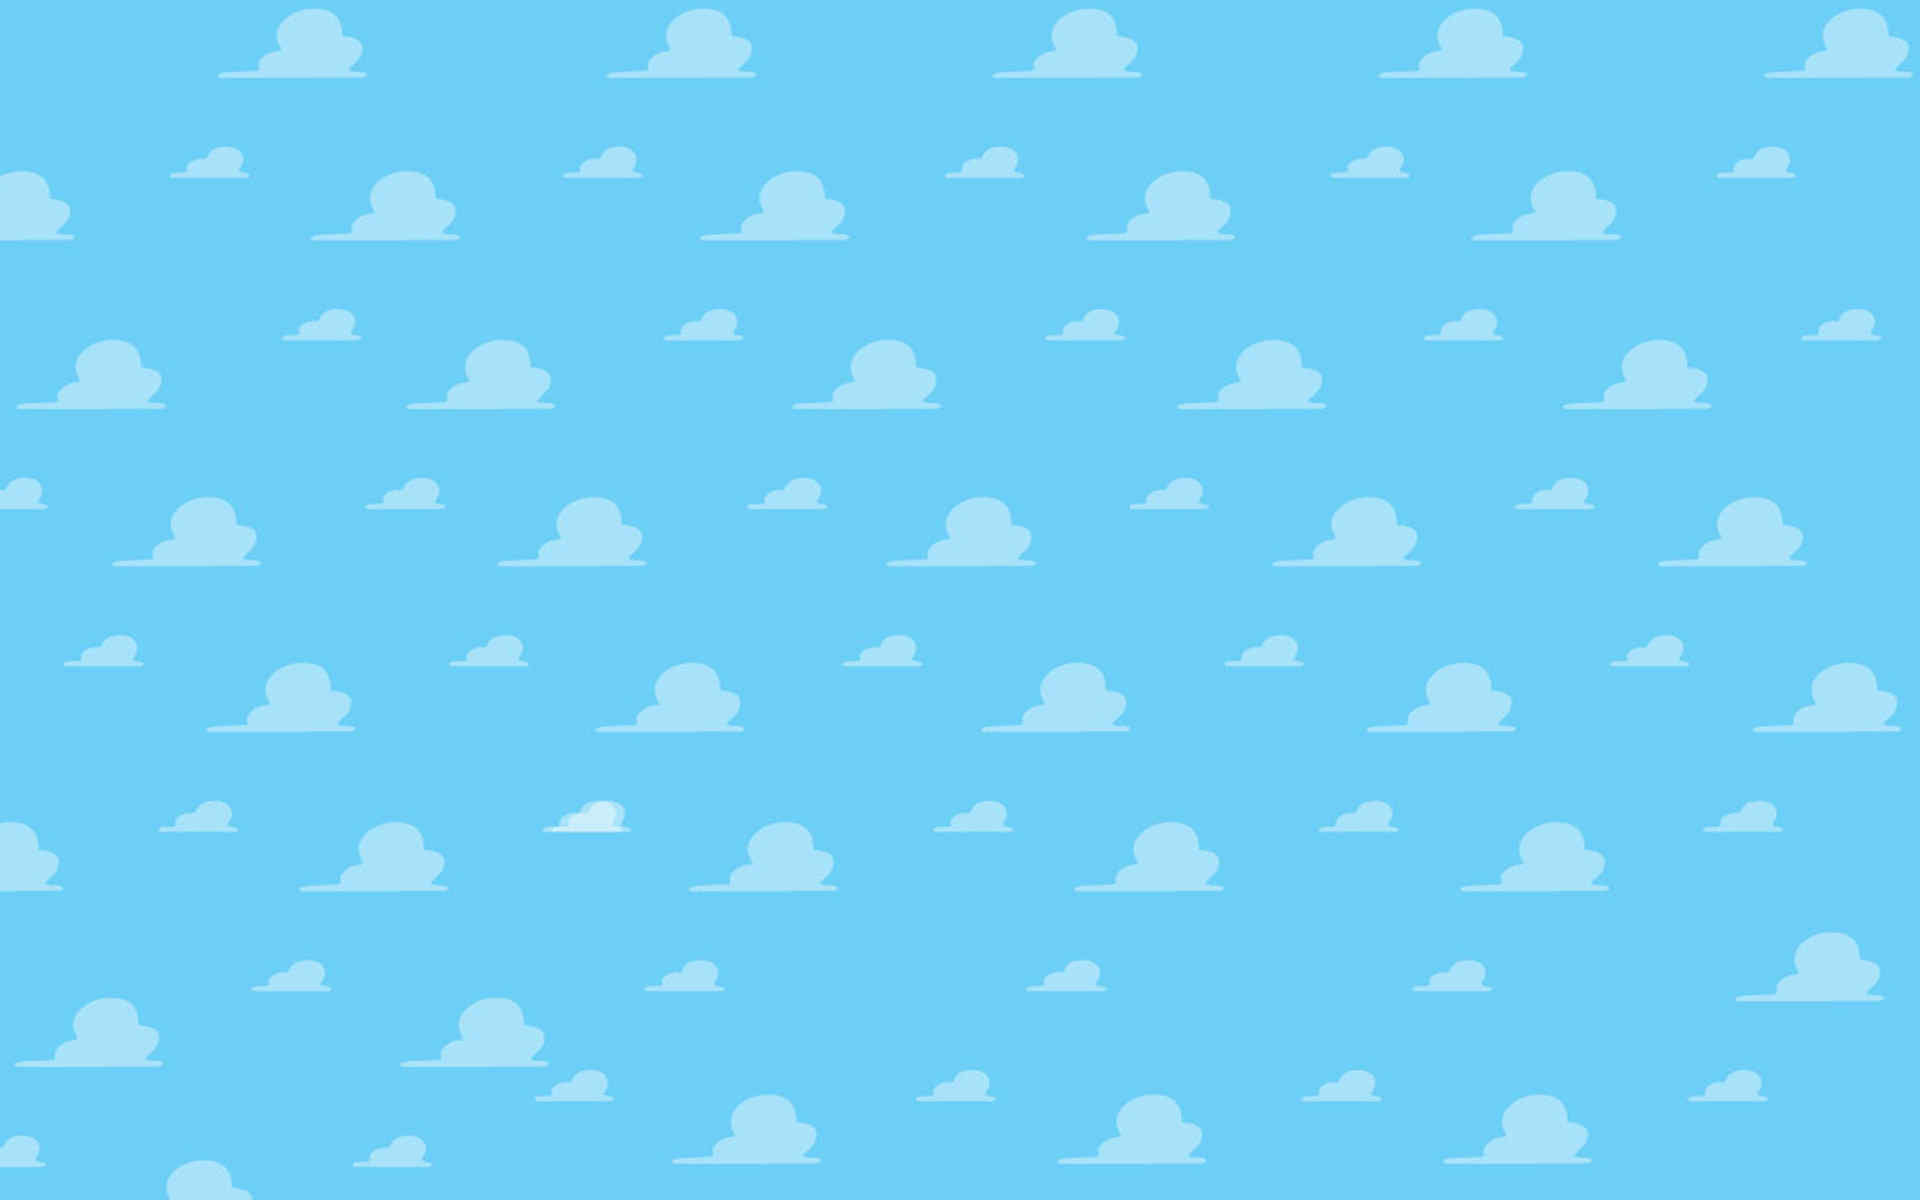 Toy Story Cloud Wallpaper - WallpaperSafari